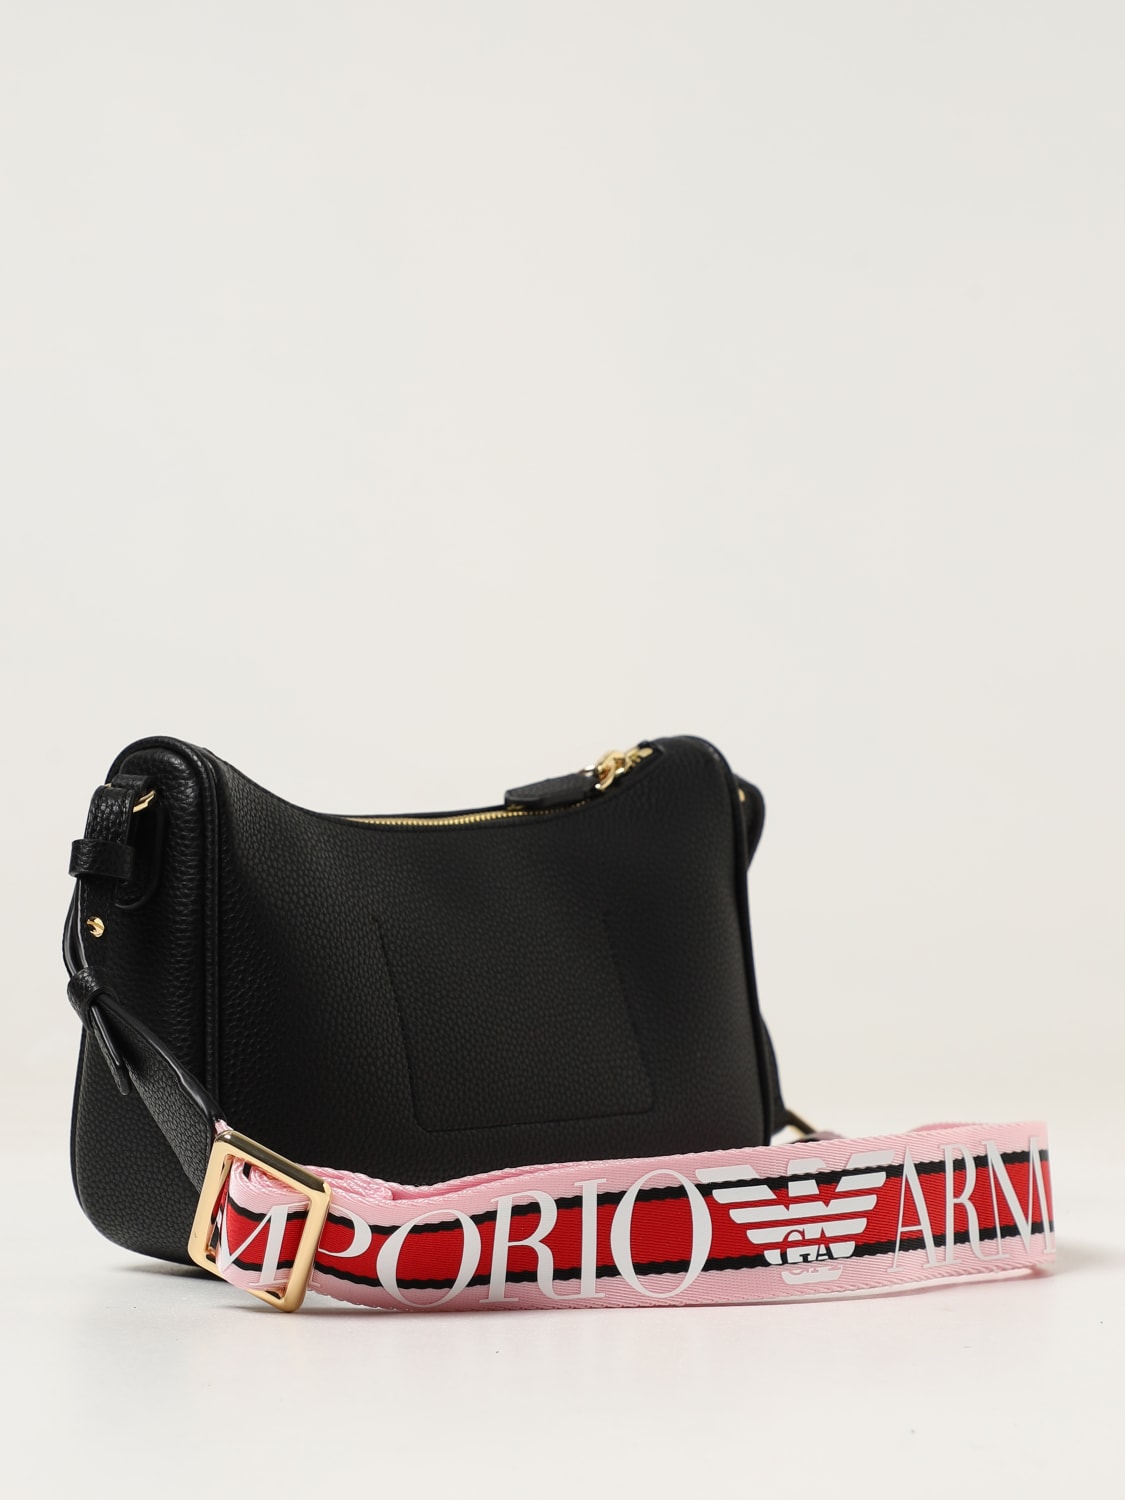 Emporio Armani Women's Crossbody Bag - Black - Shoulder Bags